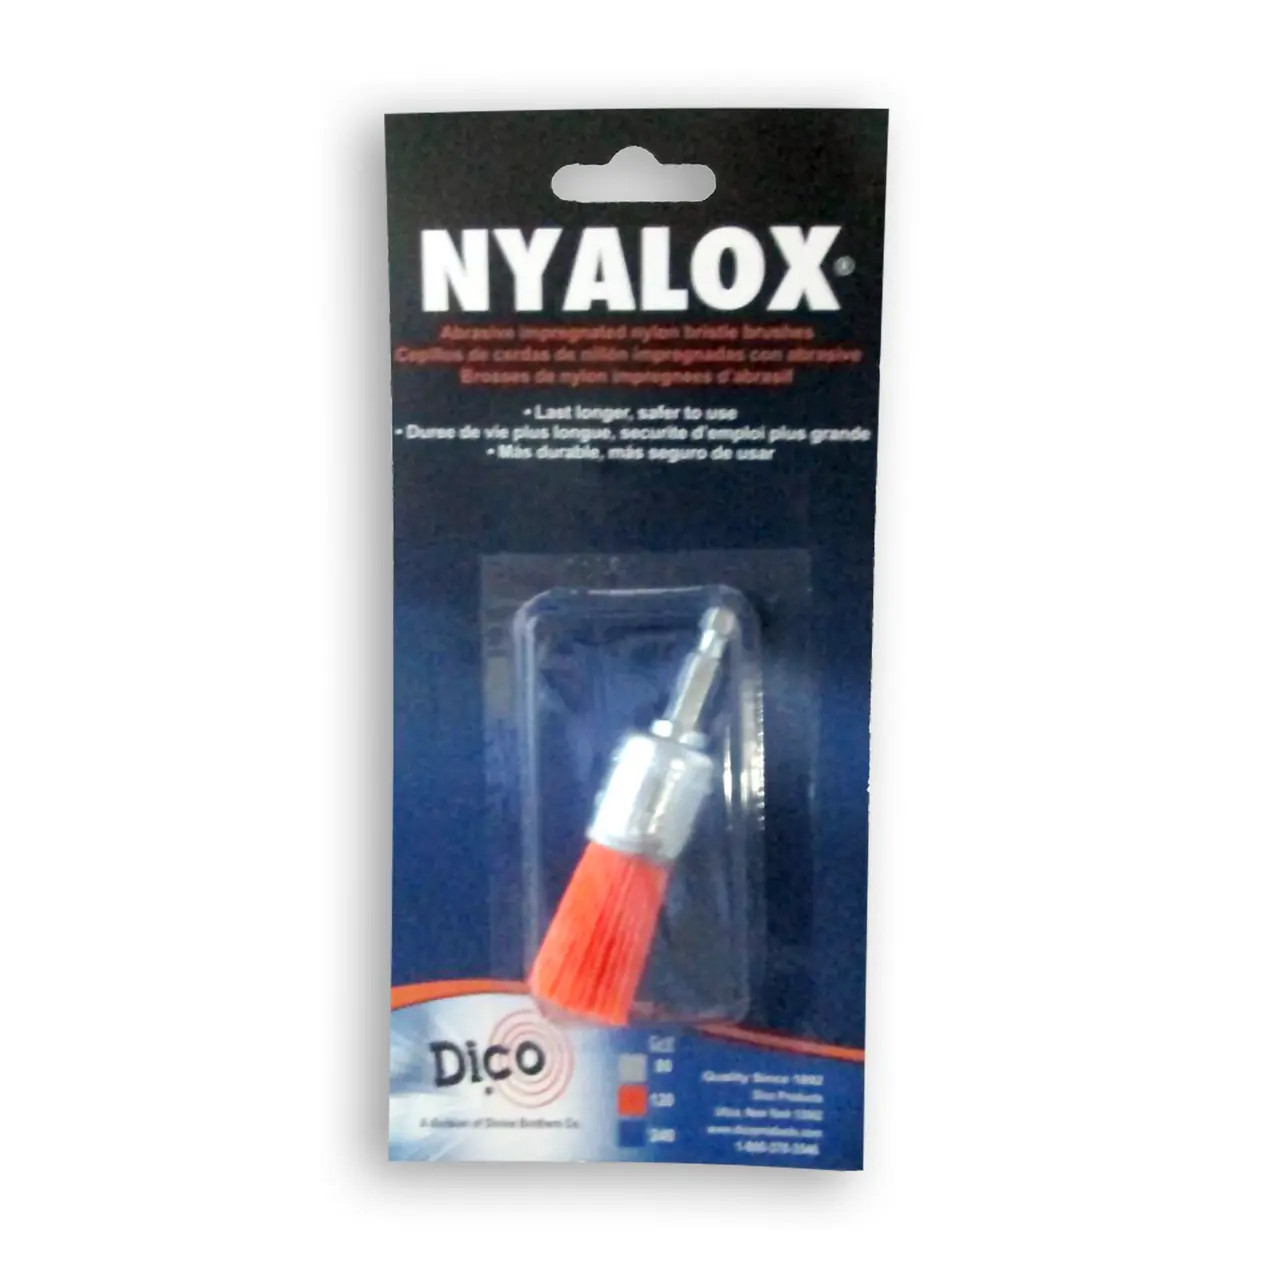 Dico Nyalox 3/4" End Brush Orange 120 Grit